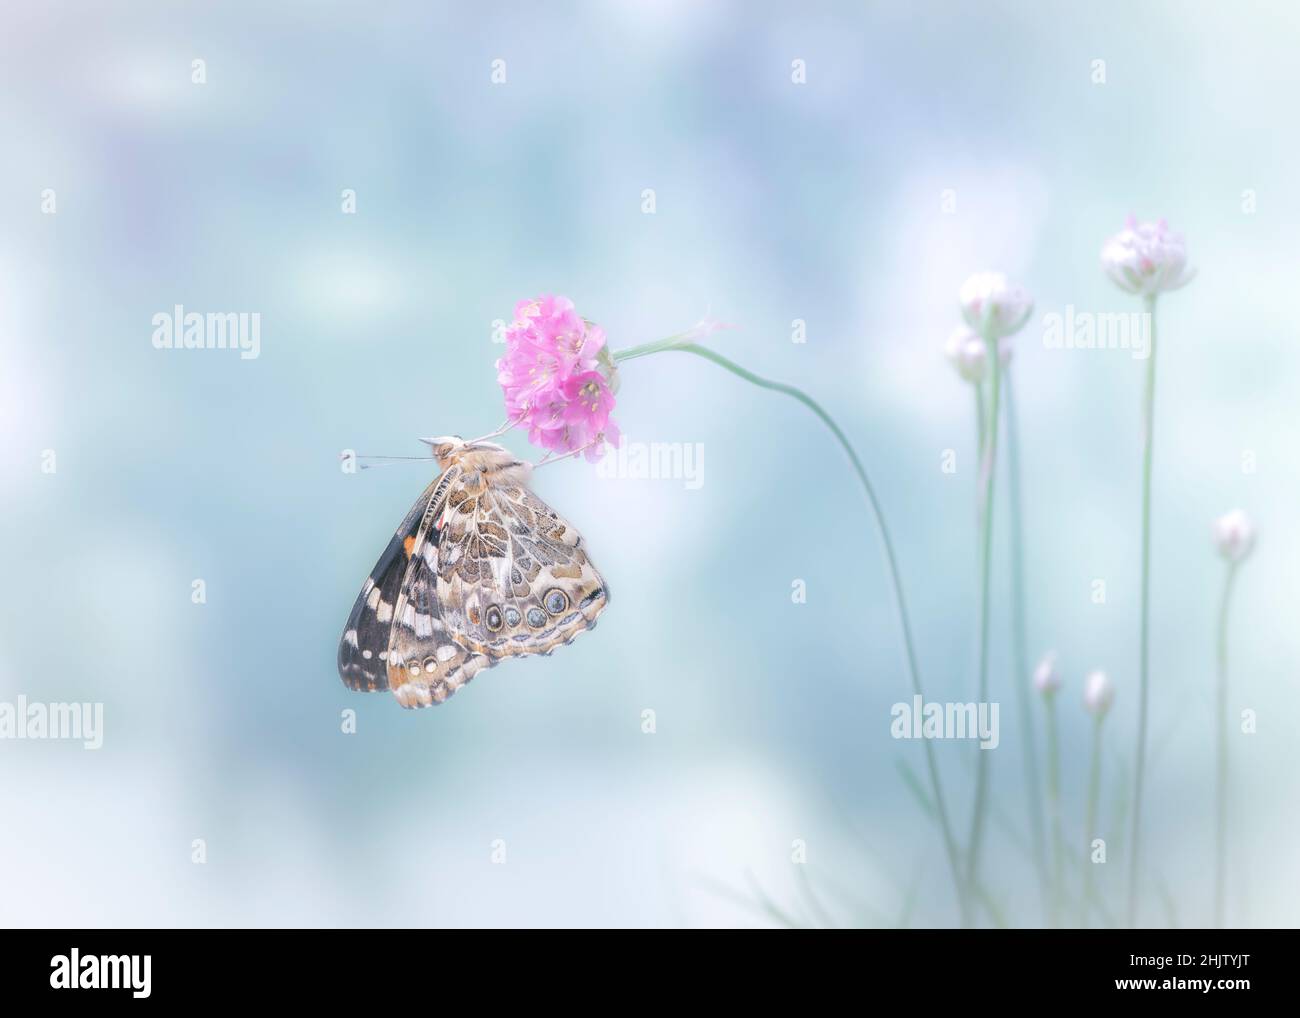 Eine gemalte Dame Schmetterling (vanessa cardui) ruht auf einer Blume im Morgennebel Stockfoto